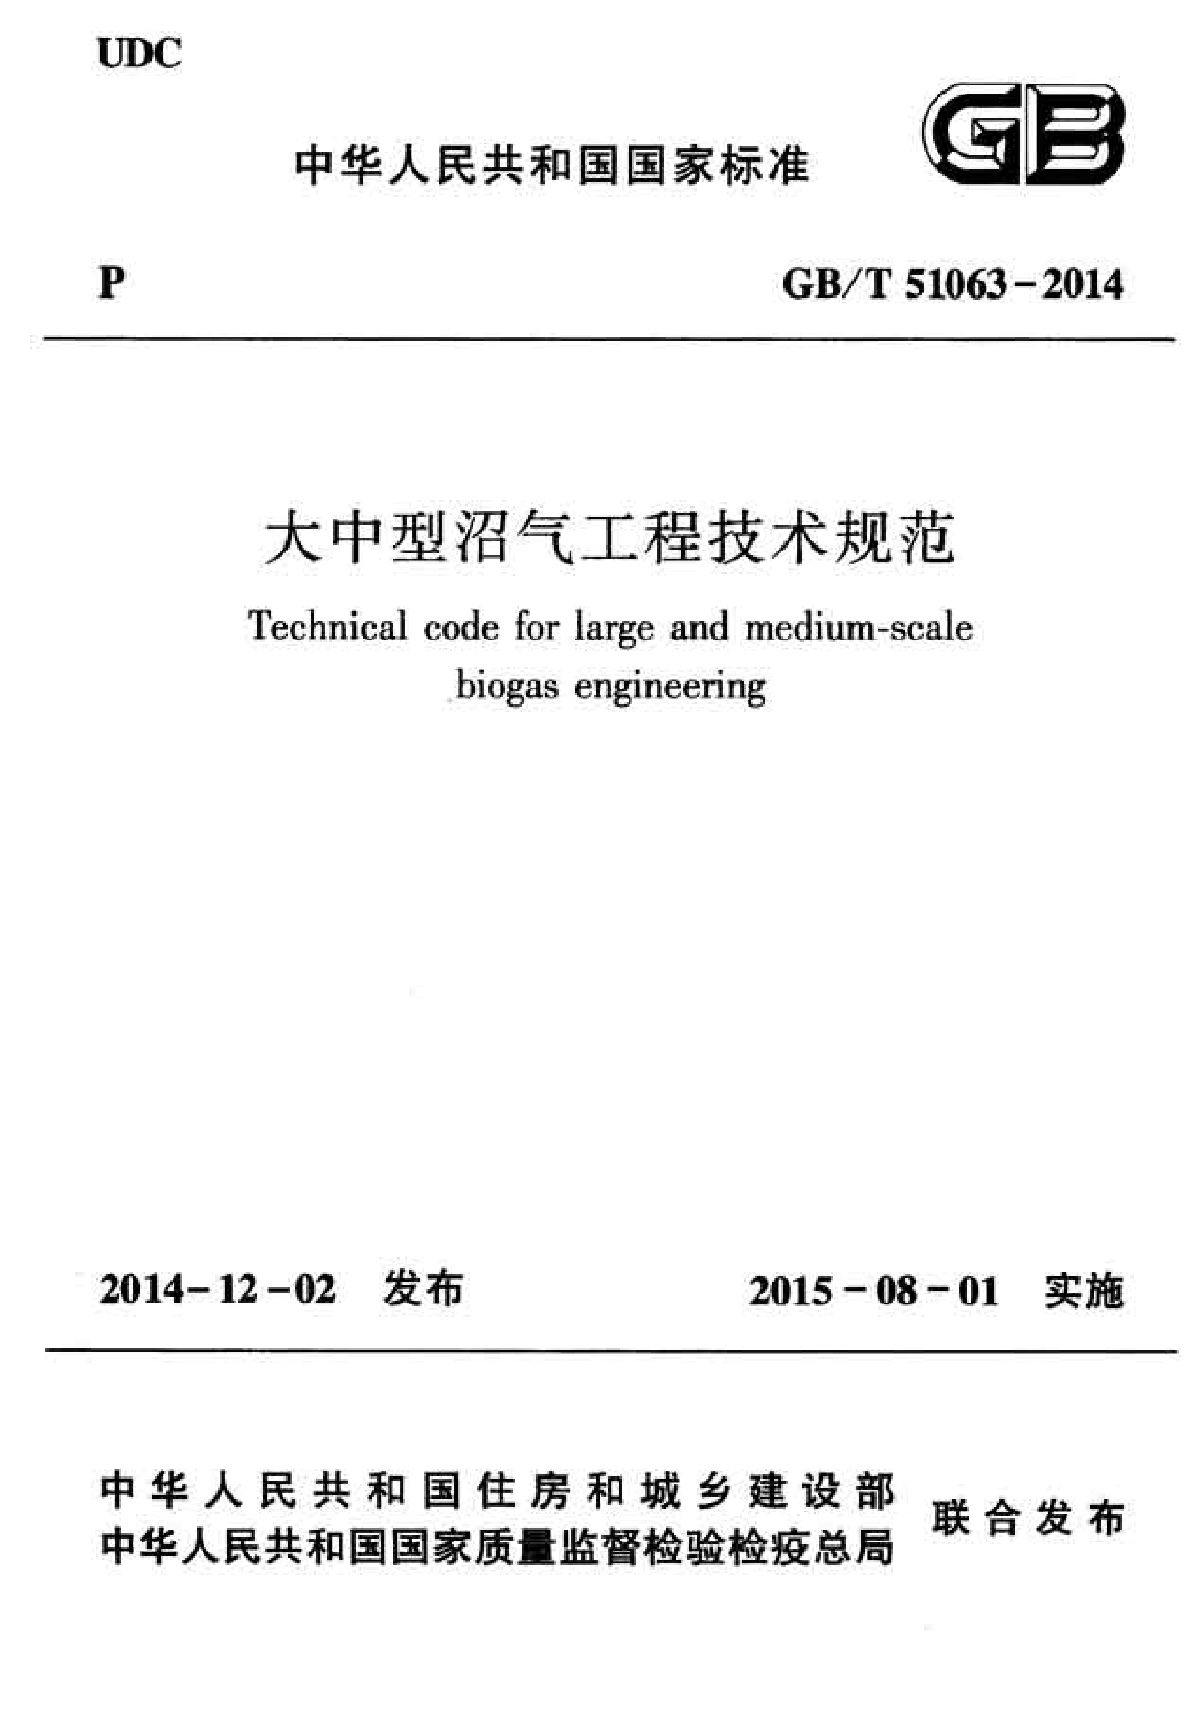 GBT 51063-2014 大中型沼气工程技术规范-图一